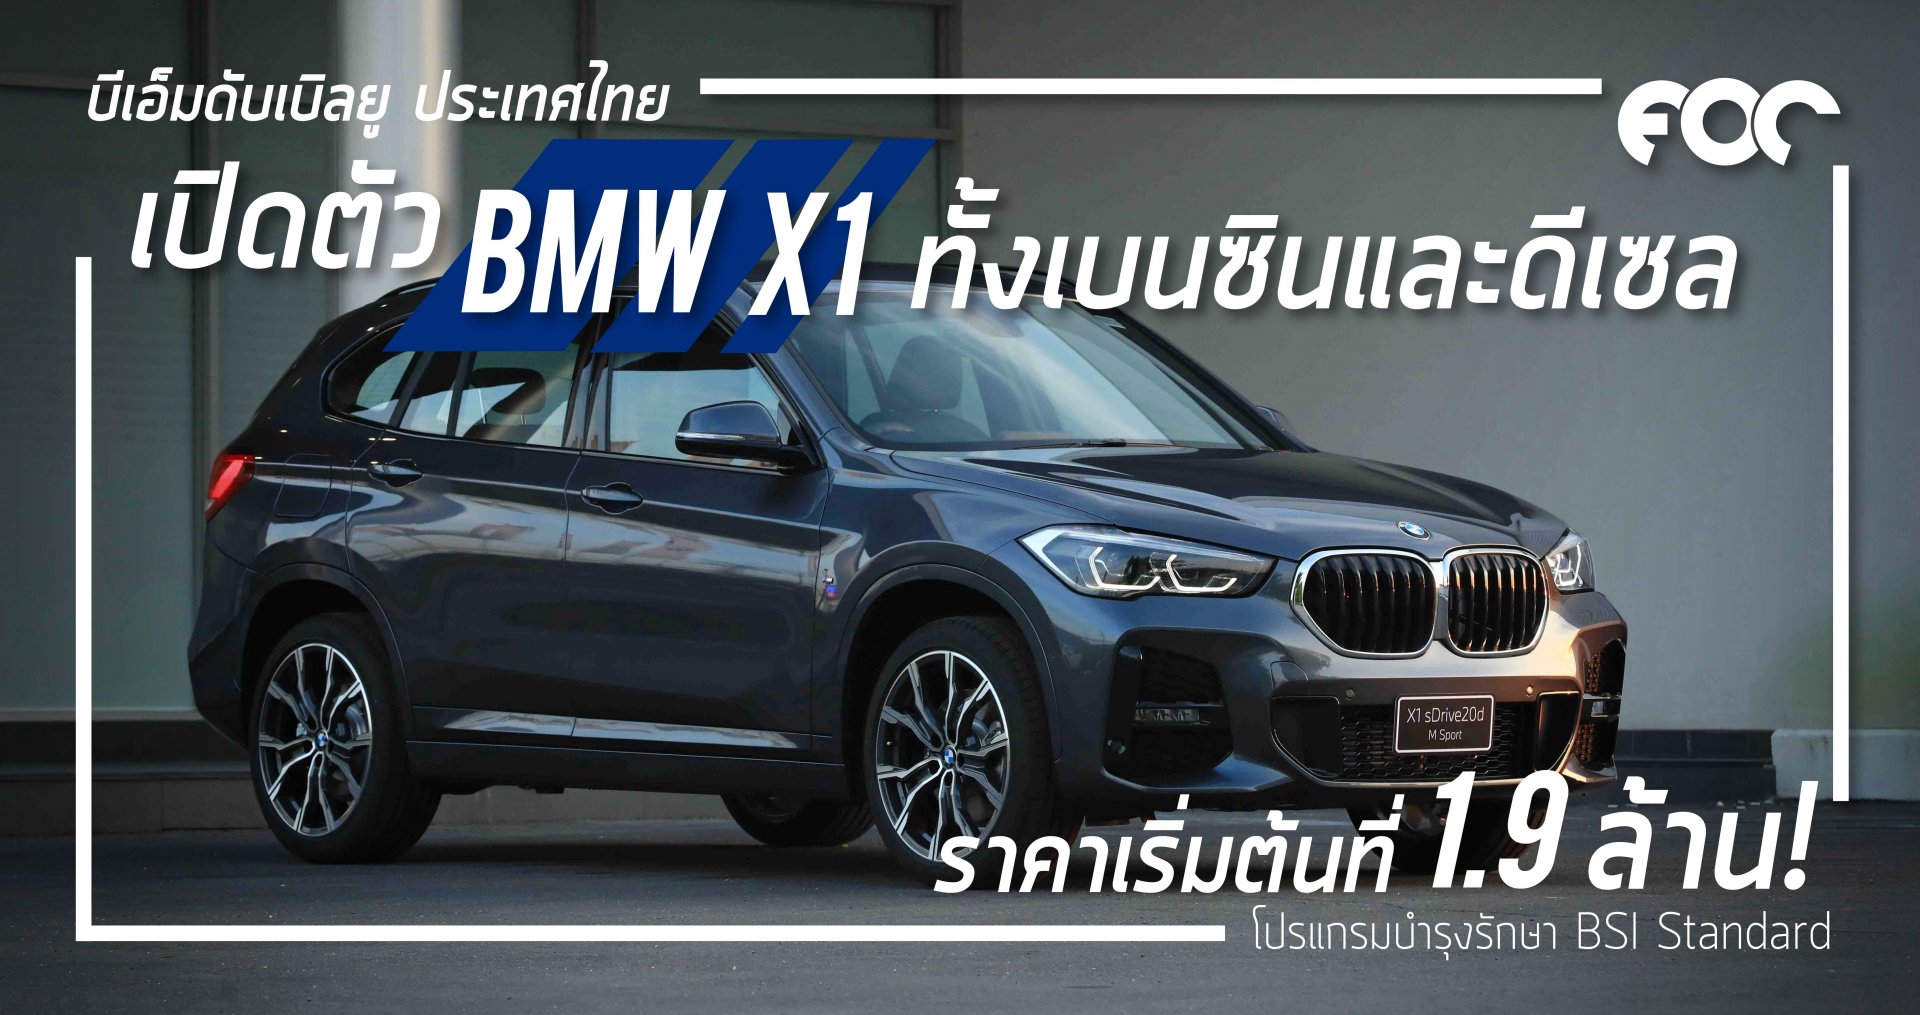 เปิดตัวแล้ว BMW X1 ทั้งเบนซินและดีเซล ราคาจำหน่ายเริ่มต้นที่ :1.9 ล้านบาท (รวมภาษีมูลค่าเพิ่ม และโปรแกรมบำรุงรักษา BSI Standard)